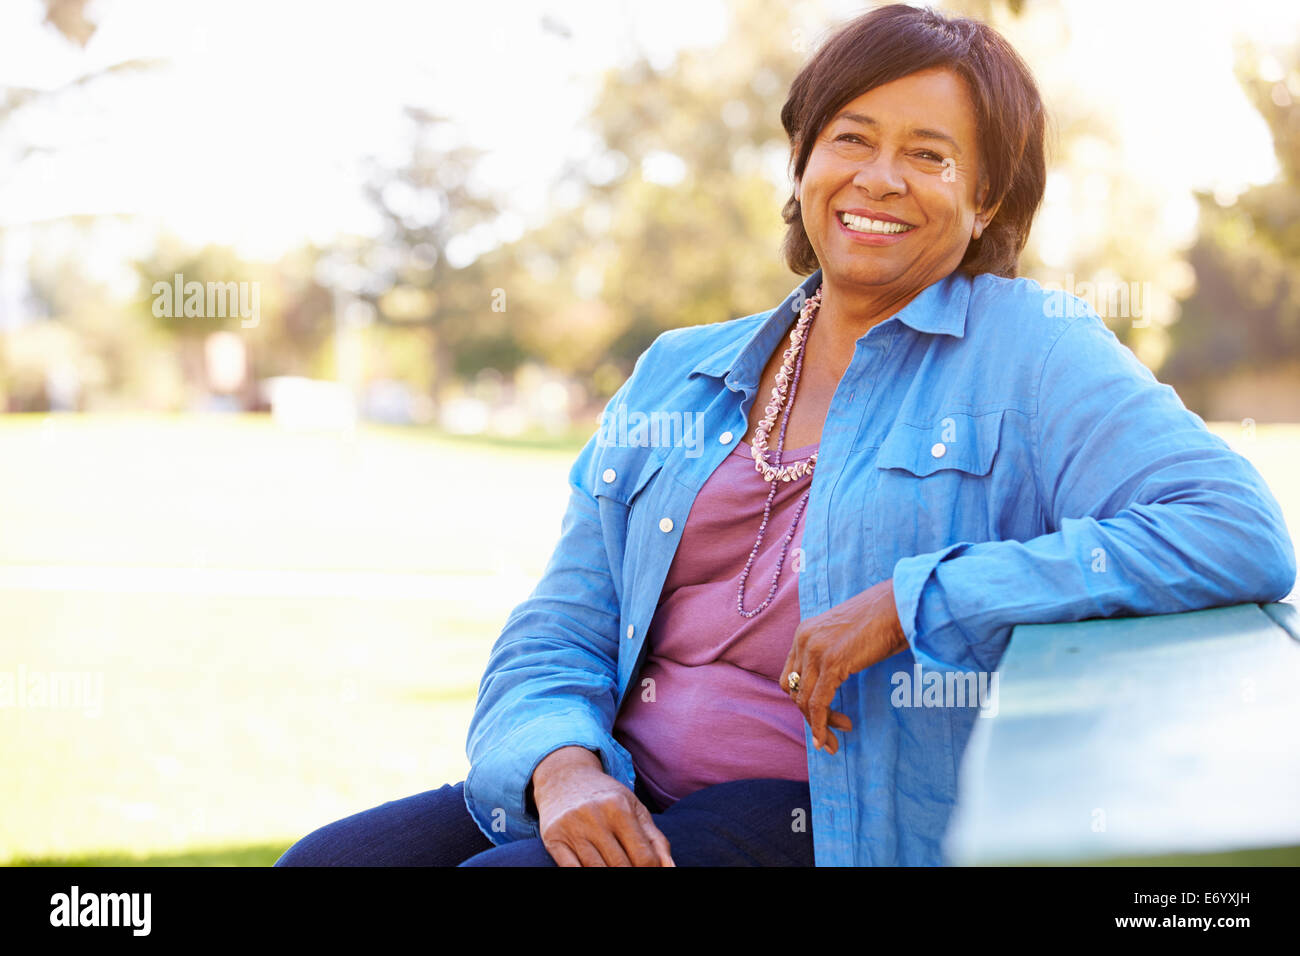 Outdoor Ritratto di sorridente donna Senior Foto Stock